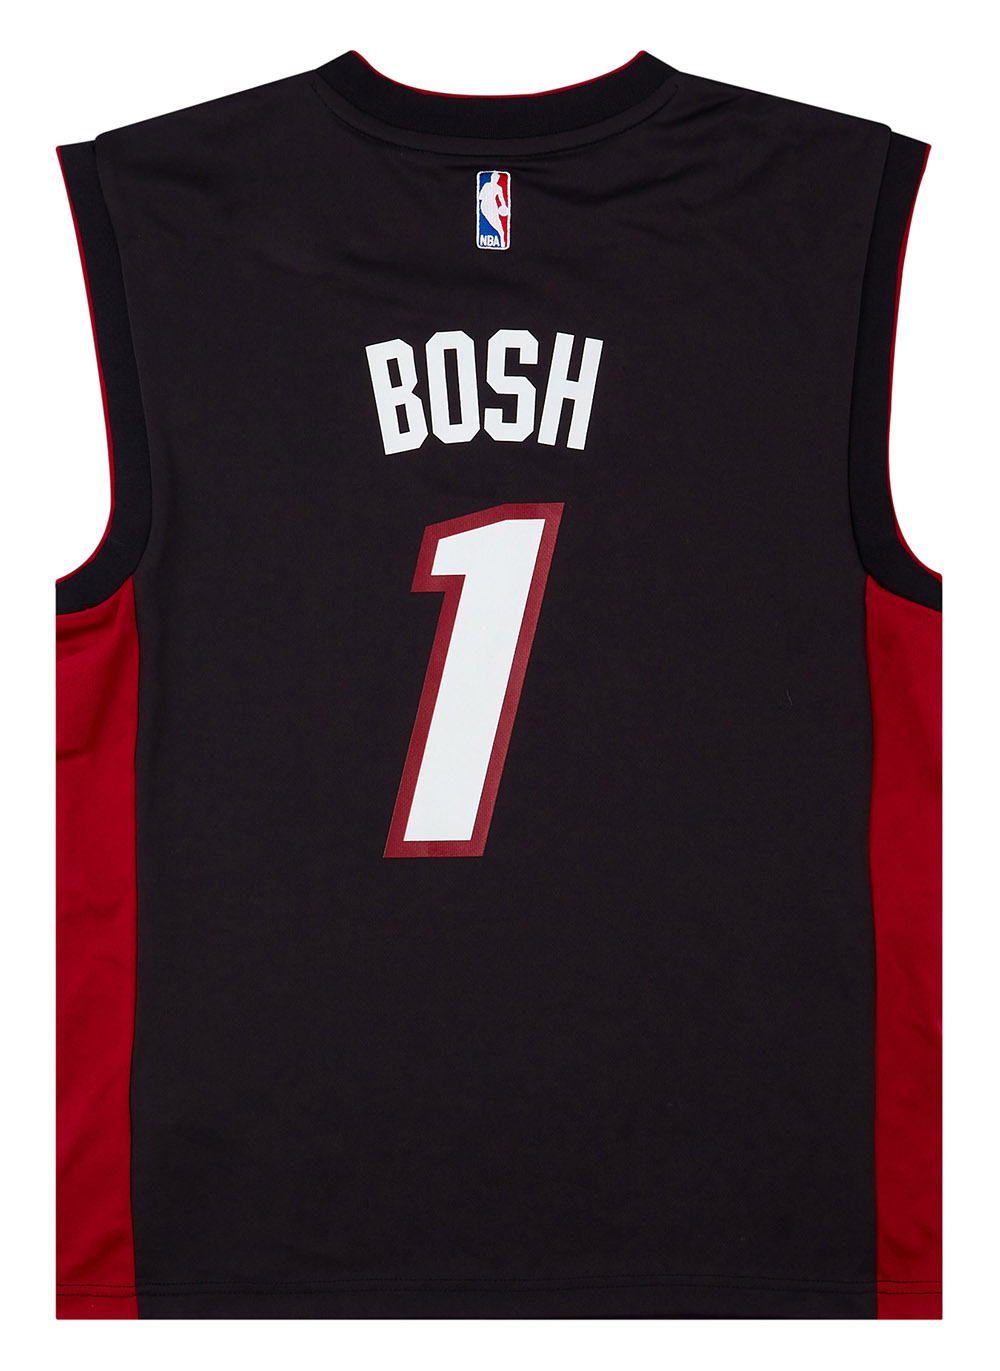 MIAMI HEAT NBA BASKETBALL JERSEY SHIRT #1 BOSH BLACK OUT ADIDAS